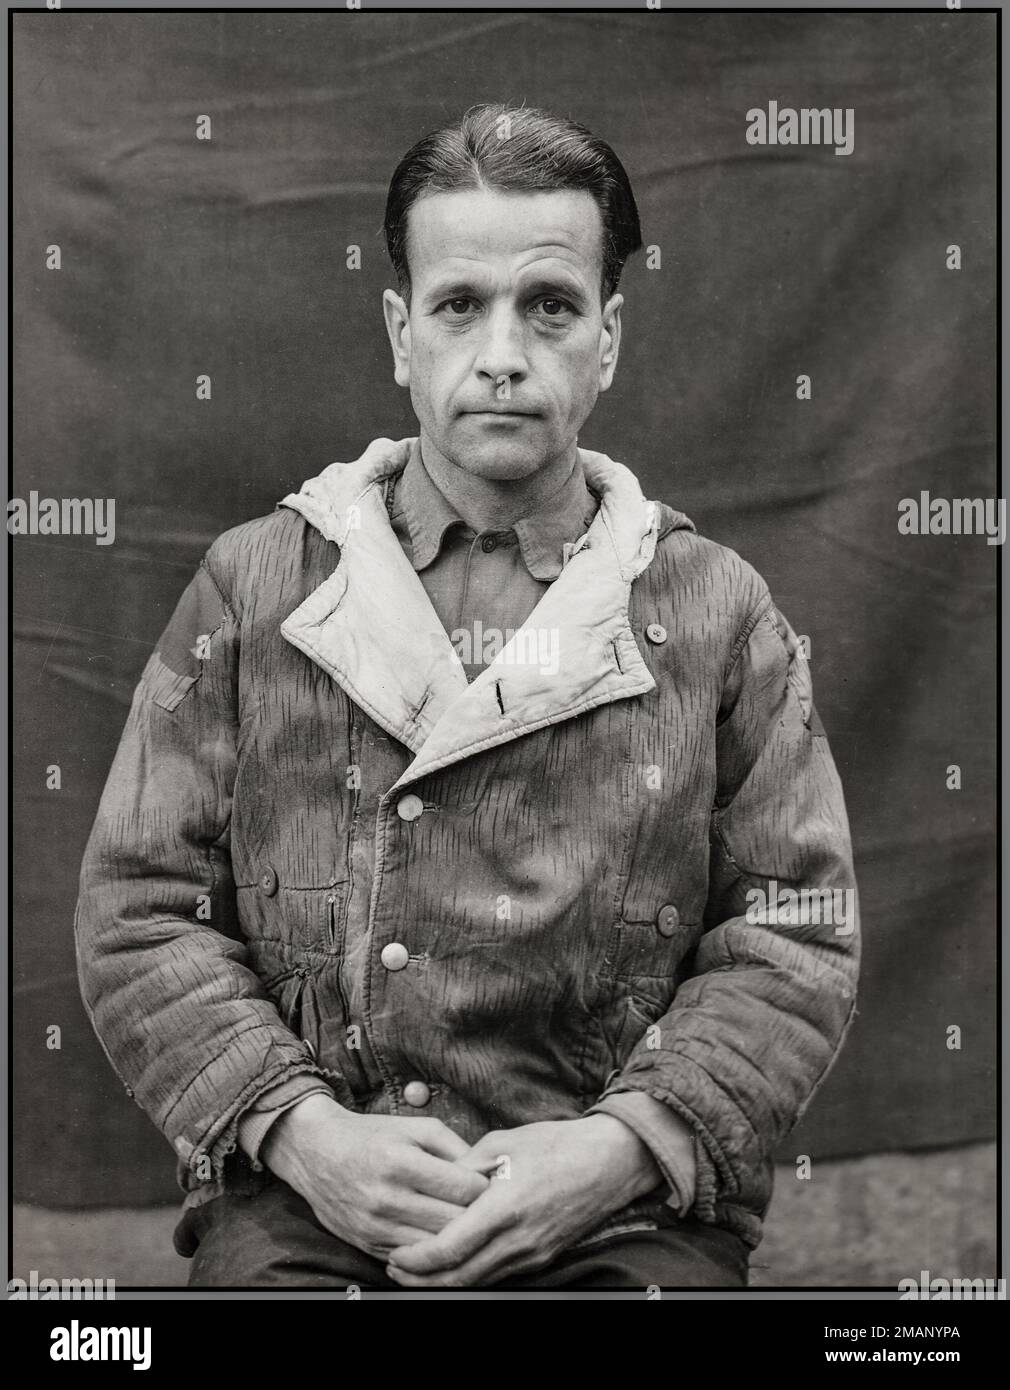 Nazi Waldemar Hoven (Nazi Waldemar Hoven, 10 febbraio 1903 – 2 giugno 1948) è stato un . Hoven è stato arrestato alla fine della seconda guerra mondiale dagli alleati e messo in giudizio come imputato al processo dei Medici, uno dei processi di Norimberga. È stato giudicato colpevole di crimini di guerra, crimini contro l'umanità e appartenenza a un'organizzazione criminale. È stato condannato a morte e impiccato il 2 giugno 1948 nella prigione di Landsberg in Baviera. Foto Stock